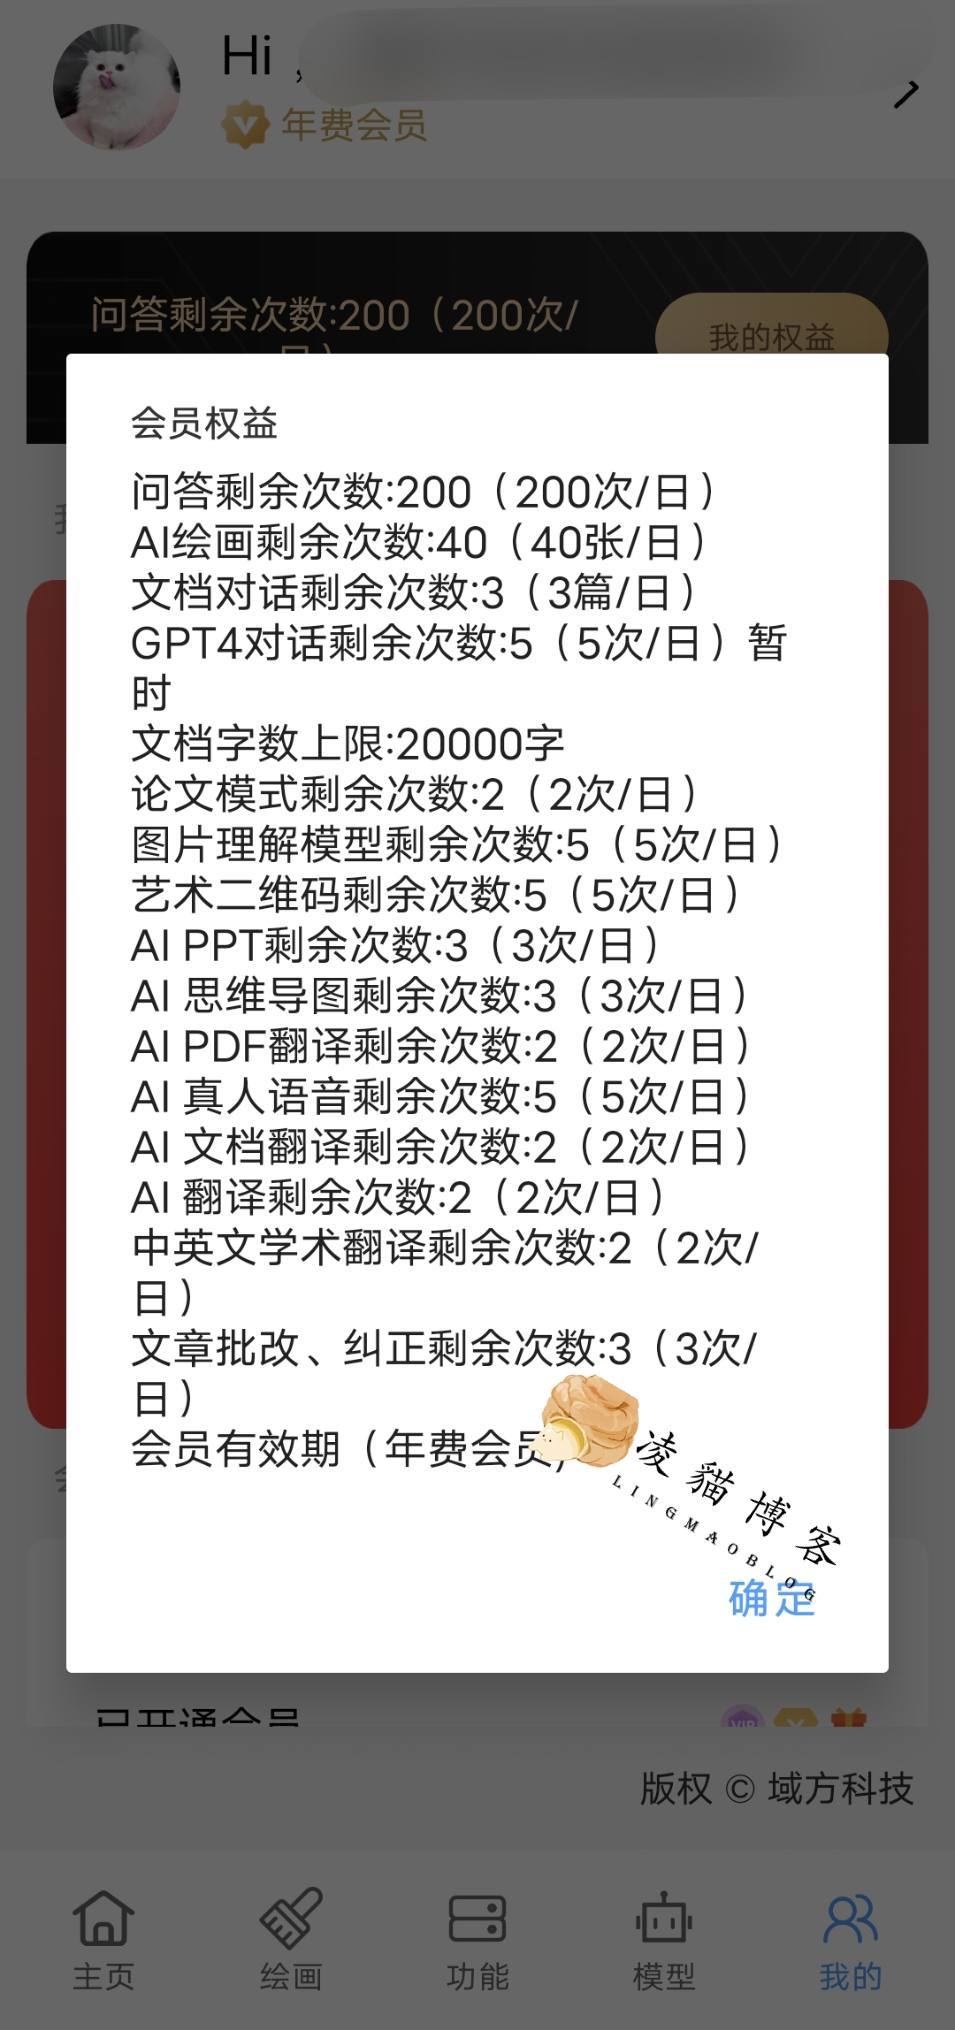 ［失效］AIChat中文 v1.5.8 超级永久会员破解版-凌貓博客